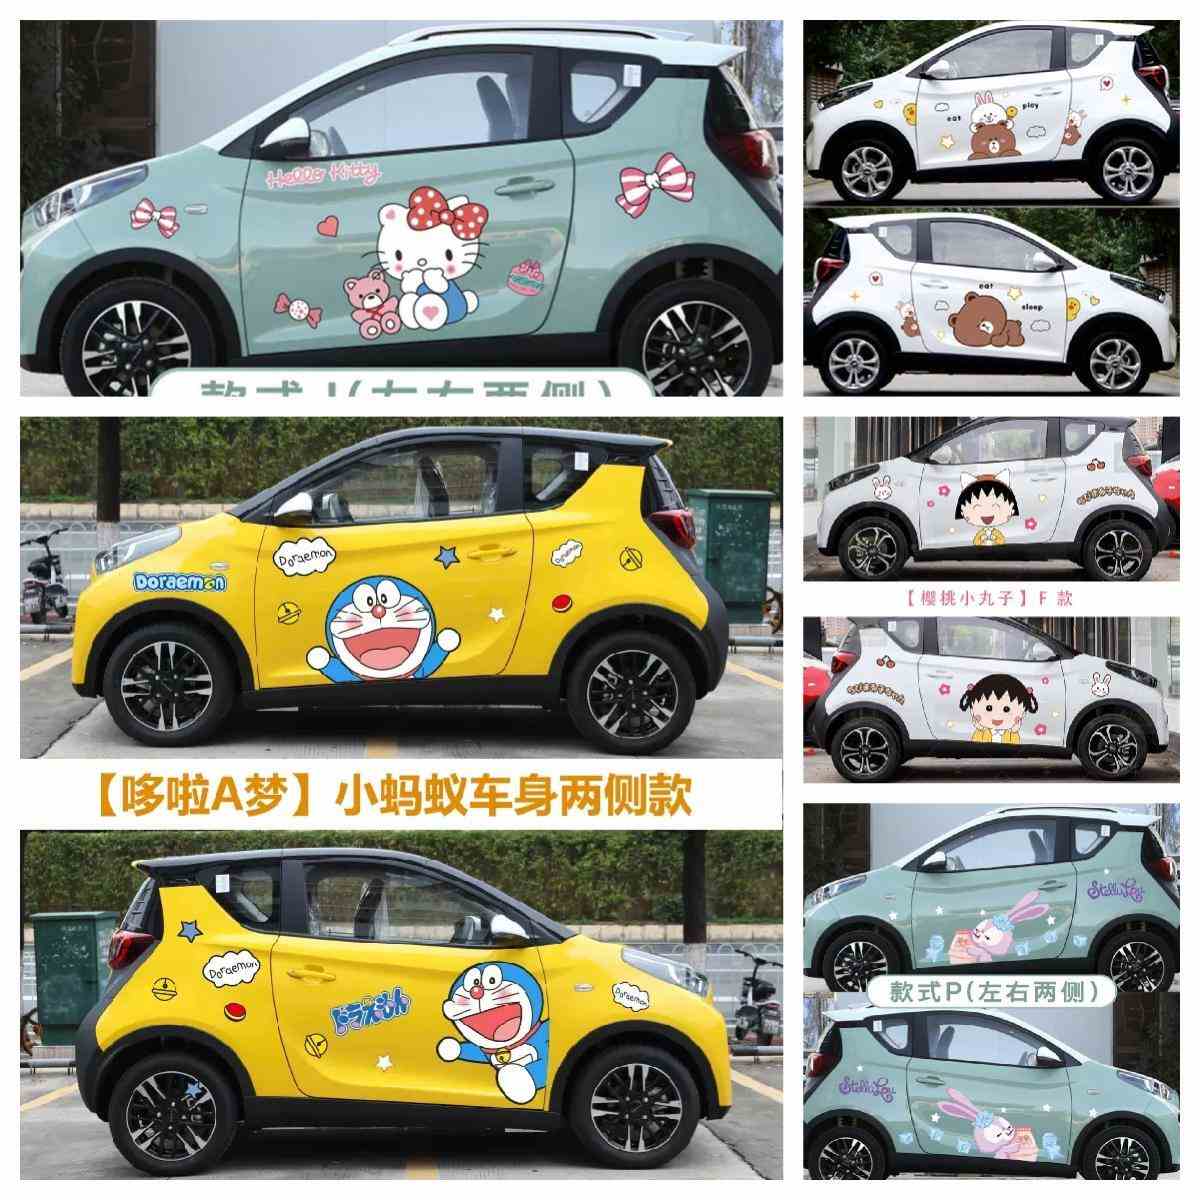 奇瑞eq1小蚂蚁车贴纸 荣威科来威可爱卡通米奇车身贴画冰淇淋拉花